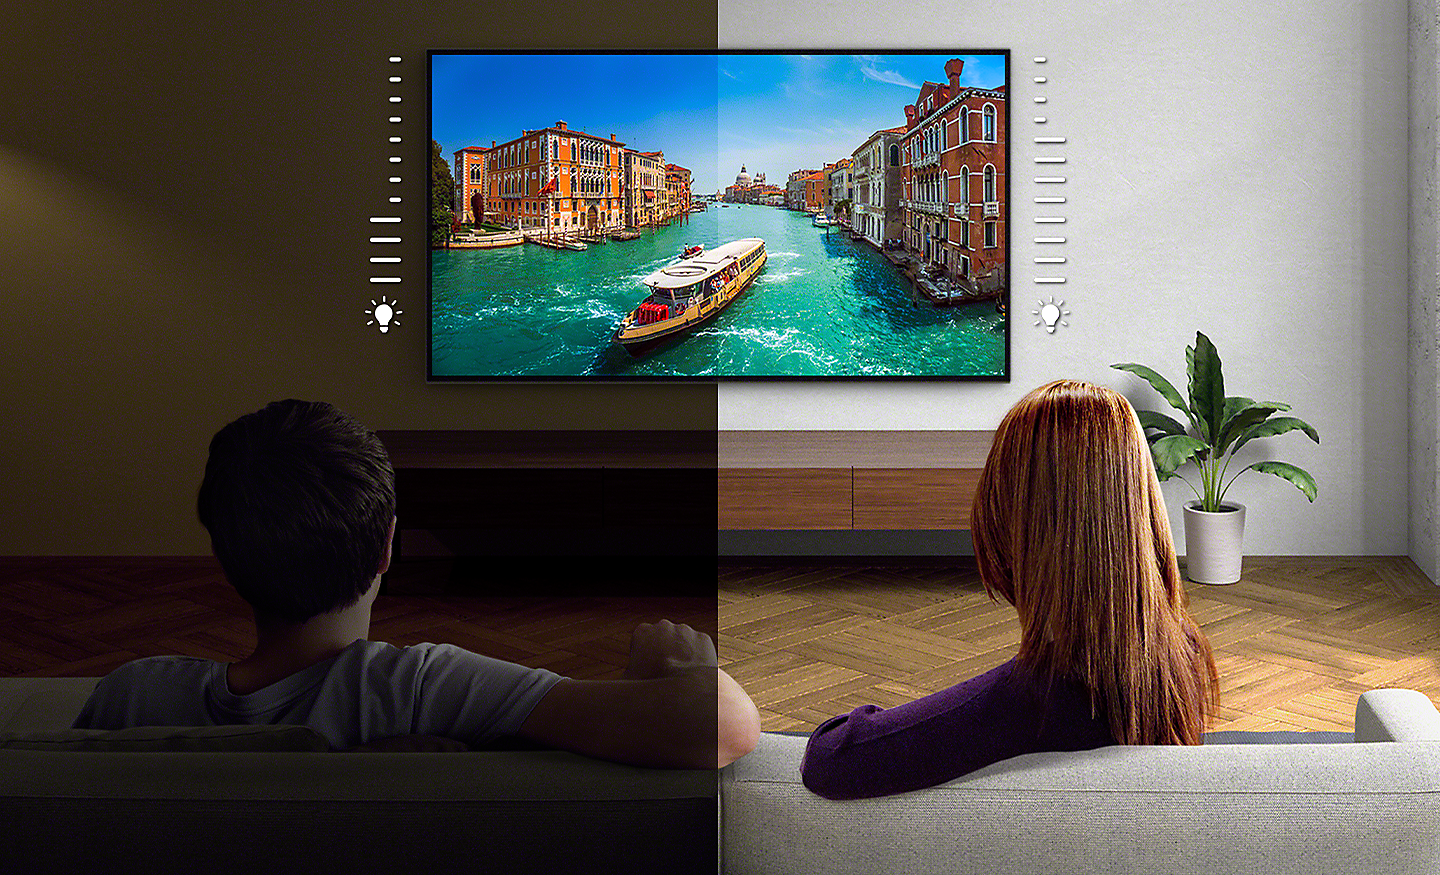 Slika podeljenog ekrana na kom par gleda TV – leva strana je tamnija u odnosu na desnu